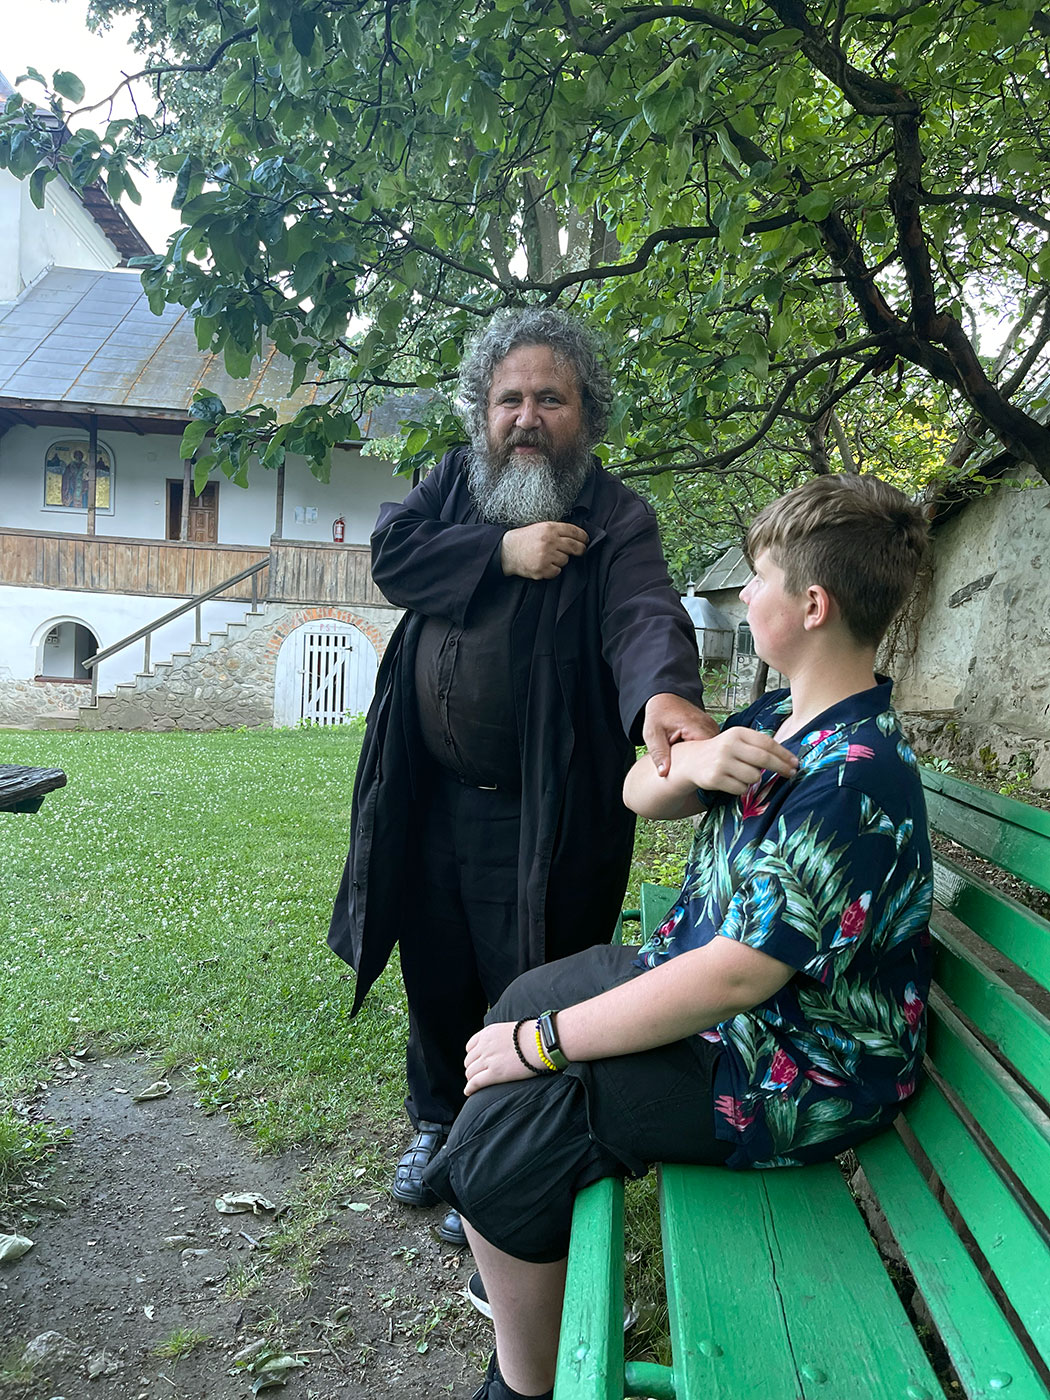 Bela im Klostergarten mit einem Mönch